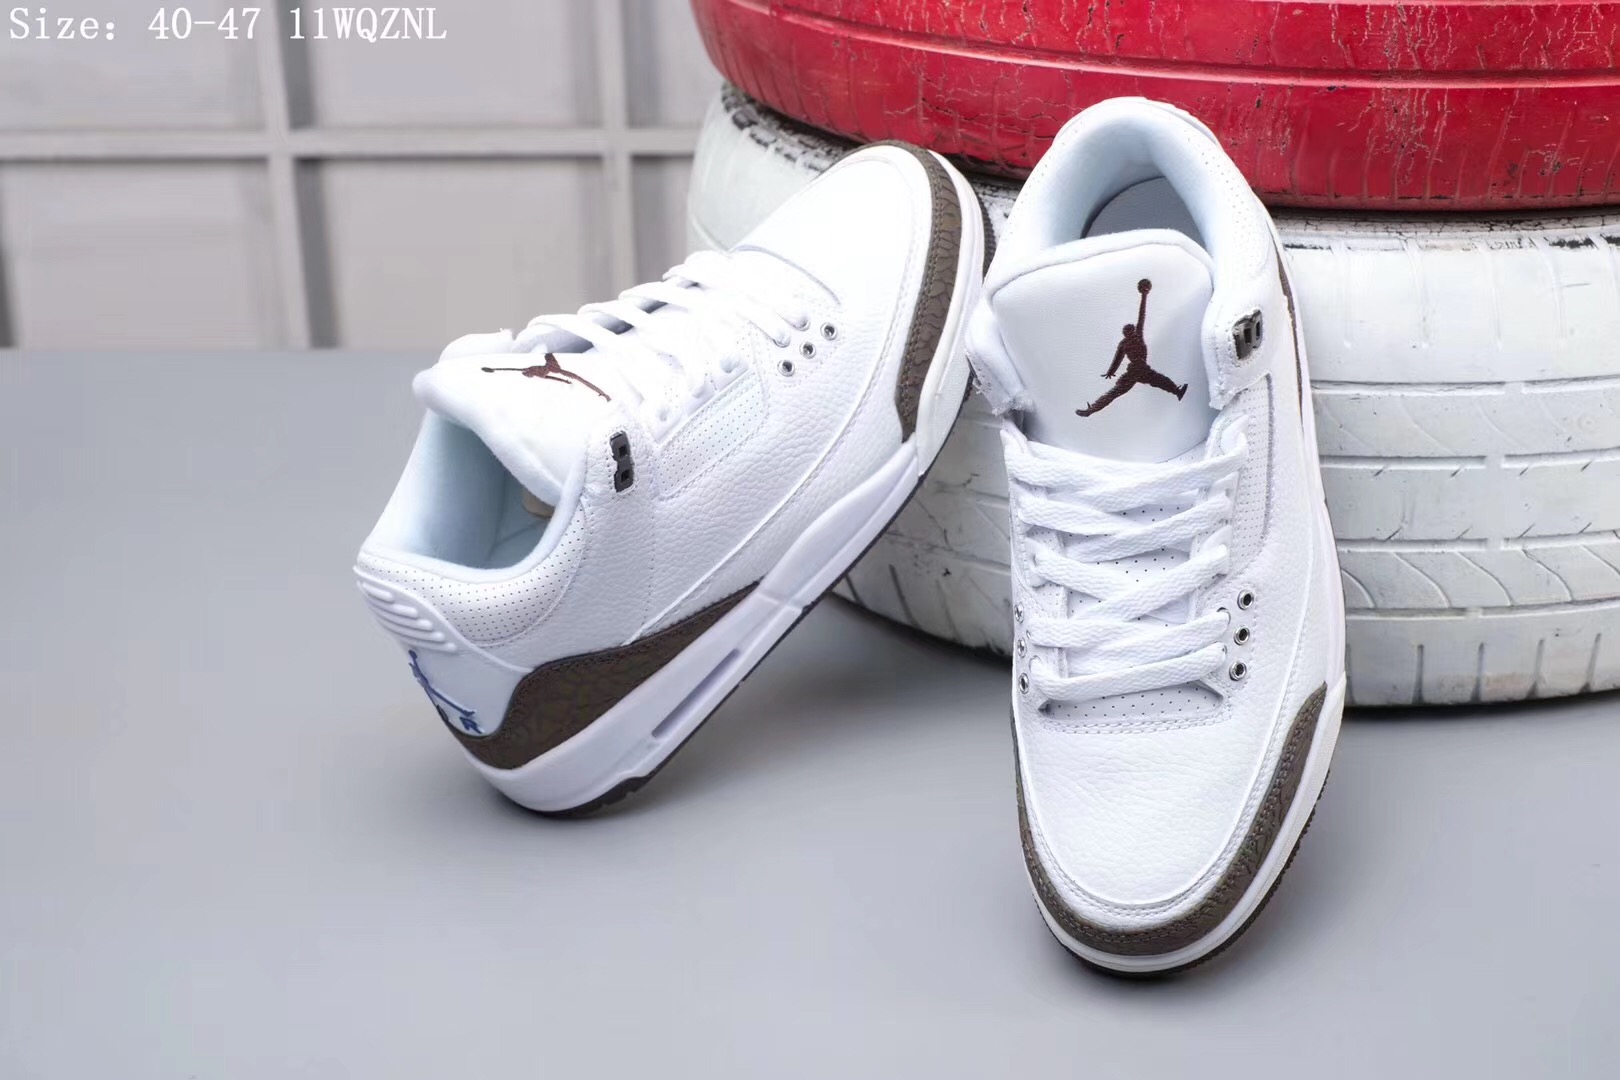 Original Air Jordan 3 White Brown Shoes